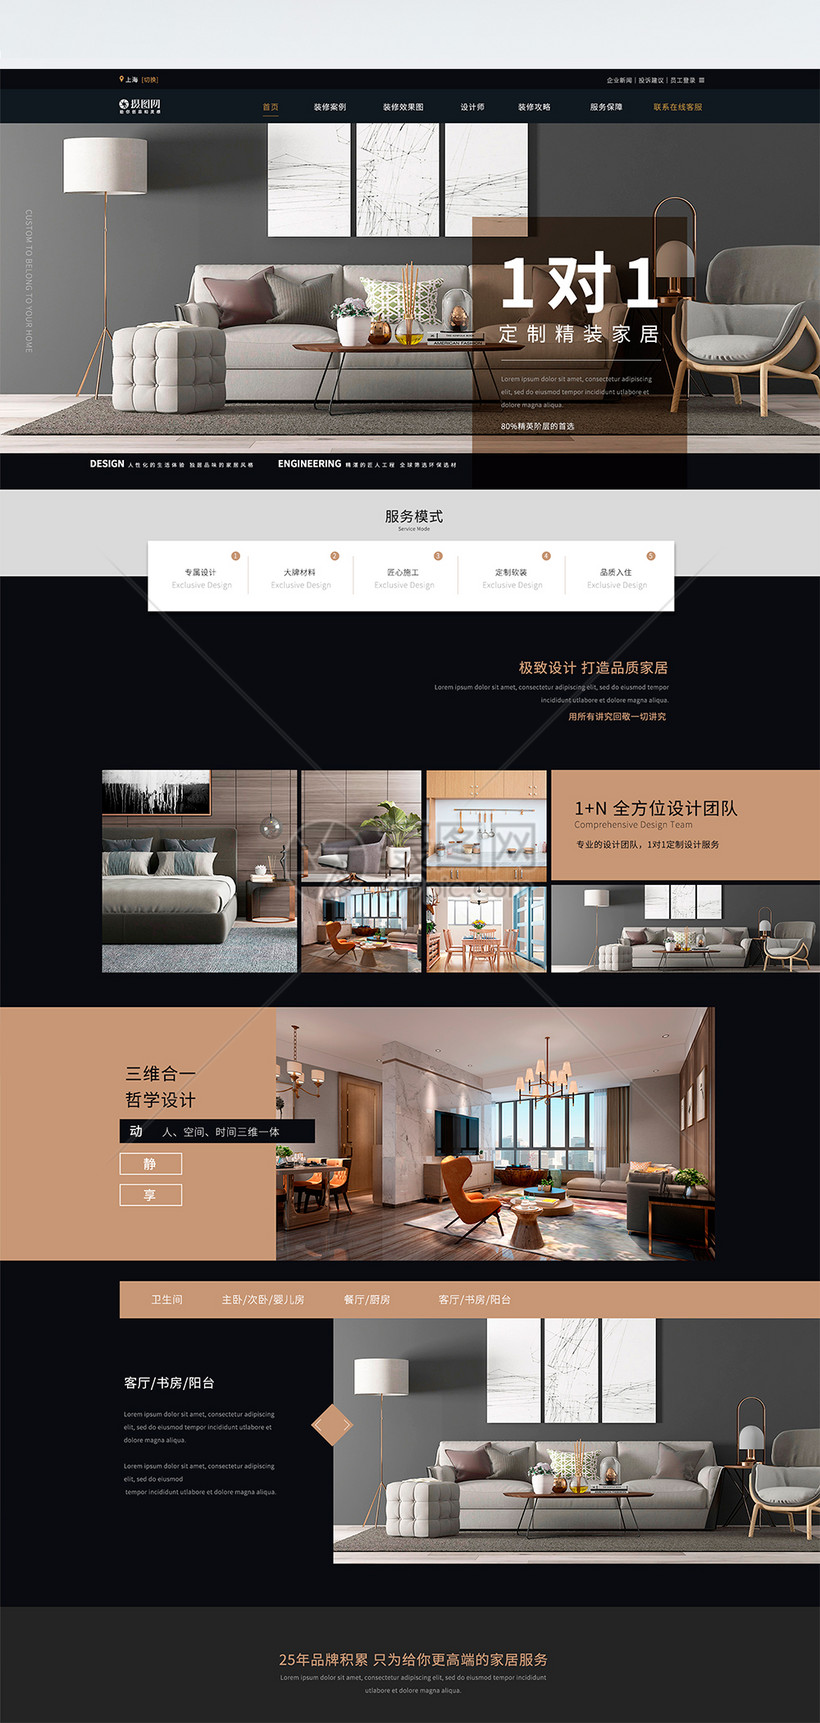 UI设计简欧家居装饰设计公司web网站首页模板图片